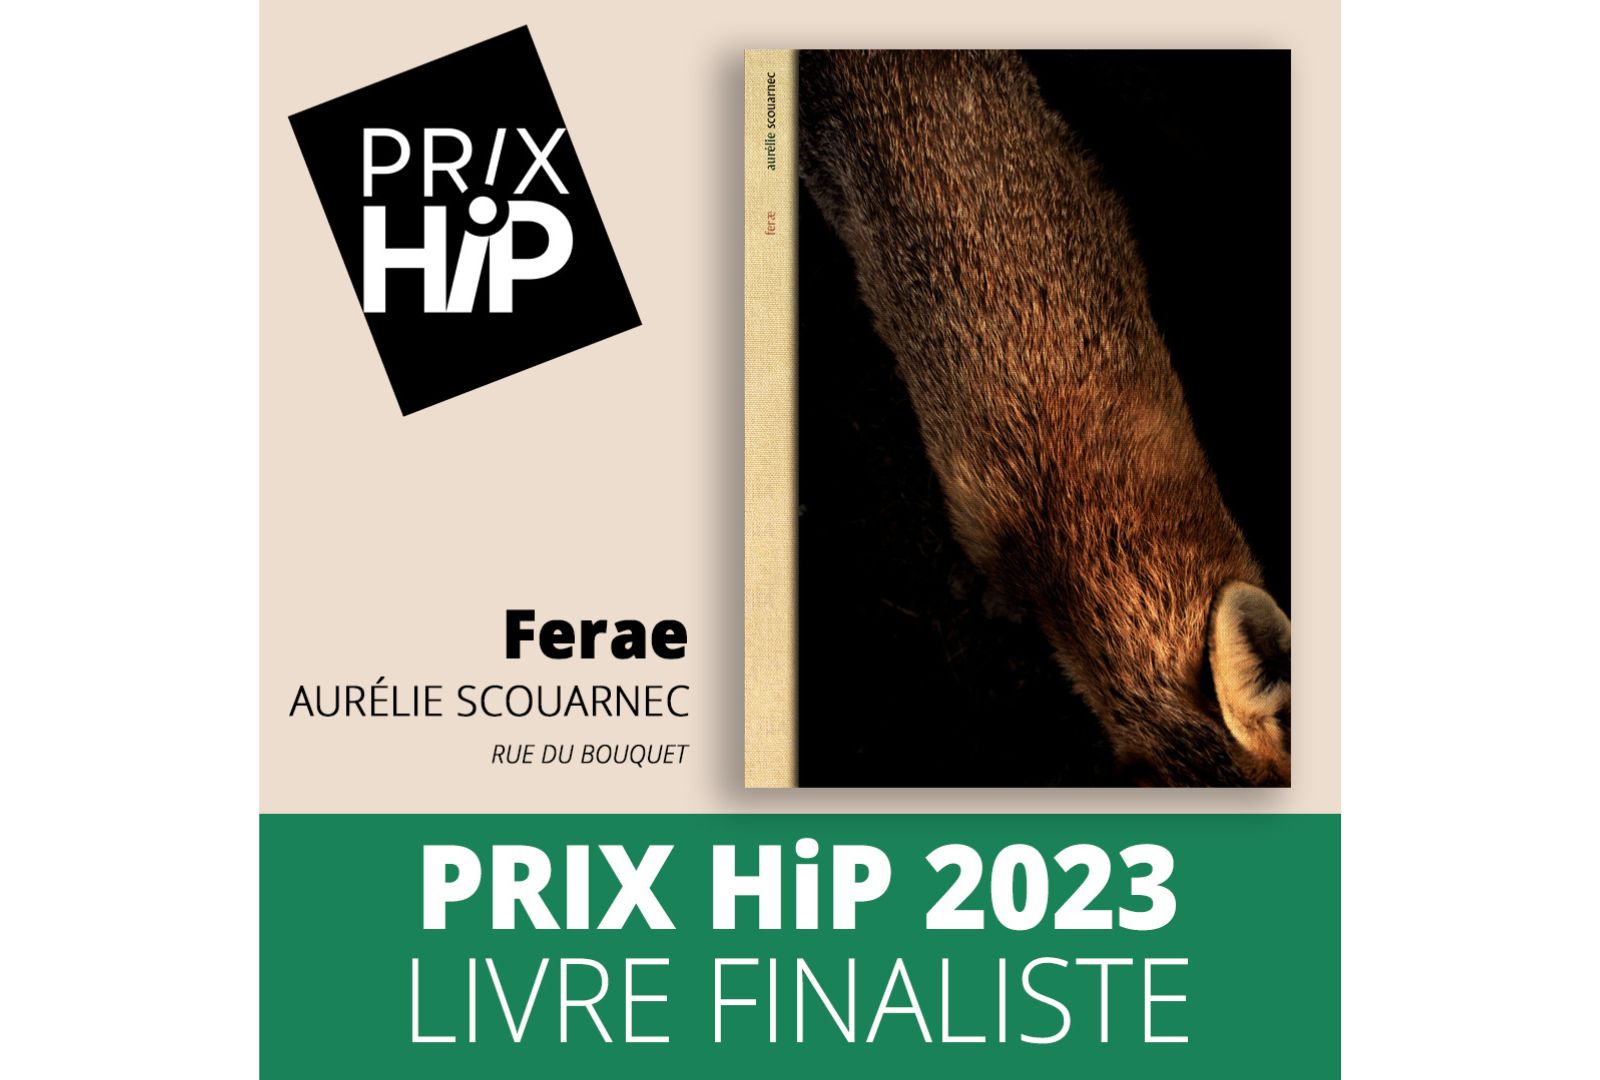 Les prix HiP 2023 Livre finaliste